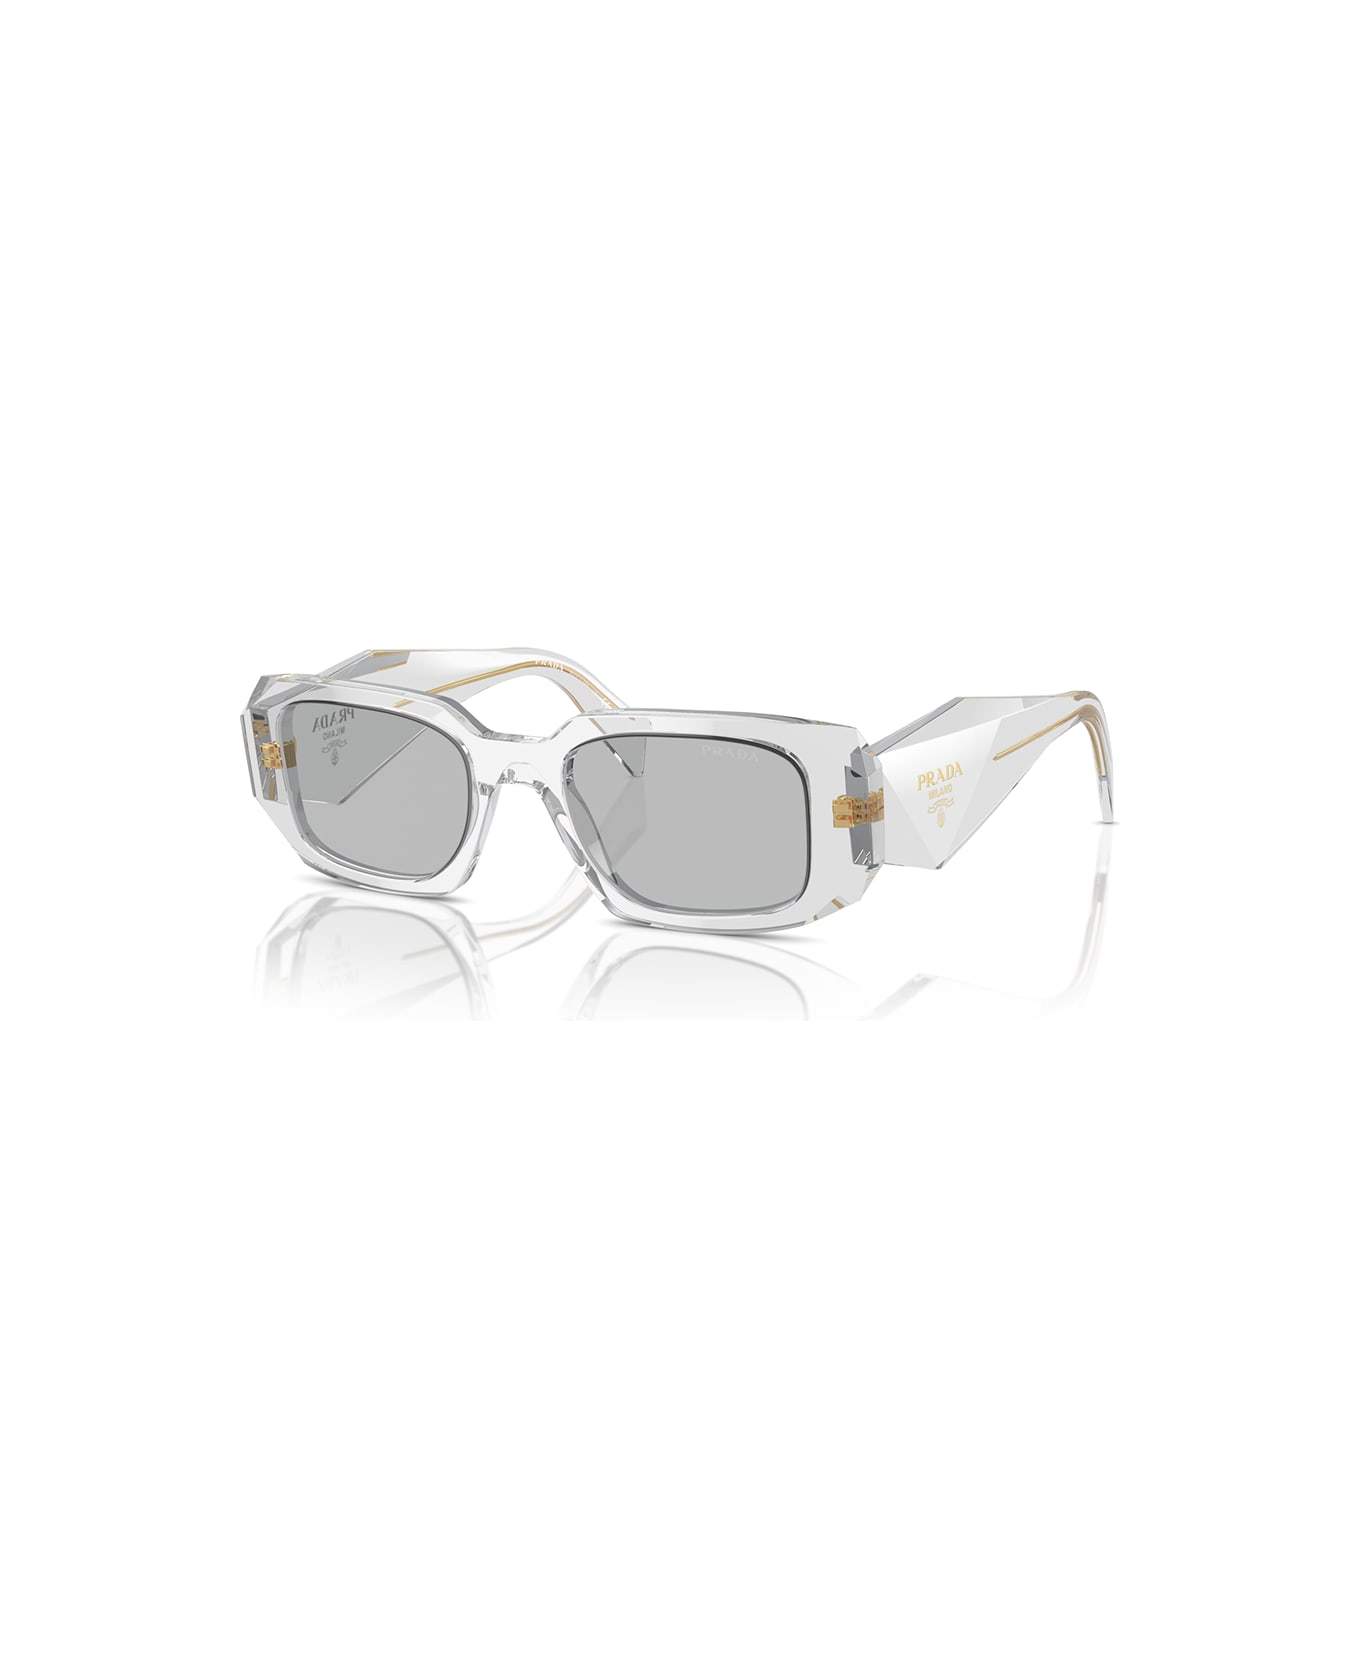 Prada Eyewear Sunglasses - Trasparente/Grigio chiaro